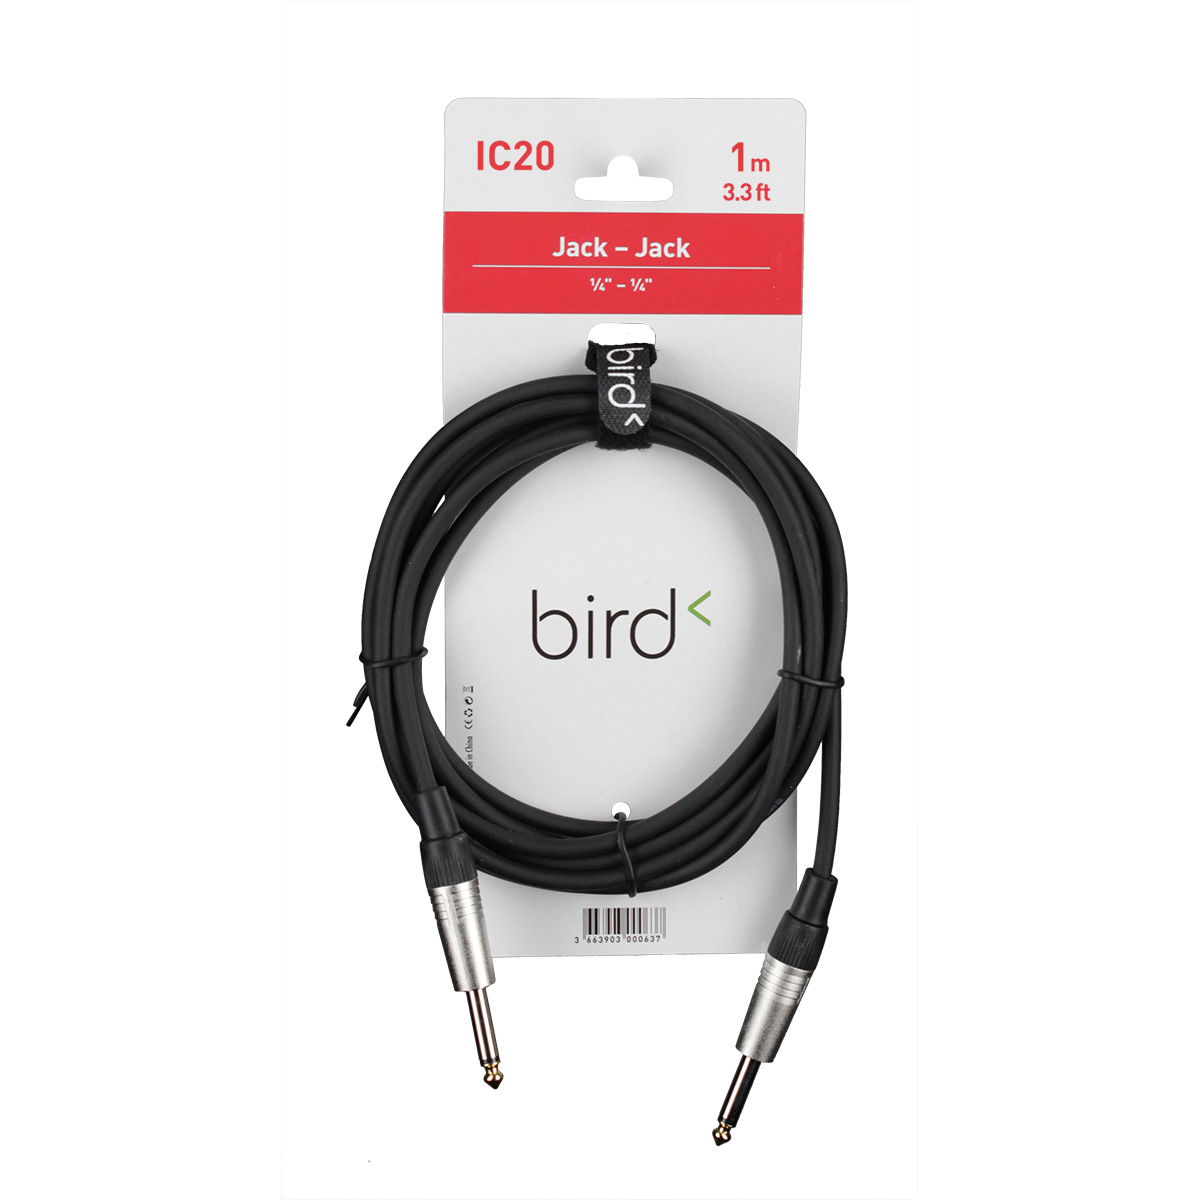 BIRD IC20 - JACK / JACK - 1M